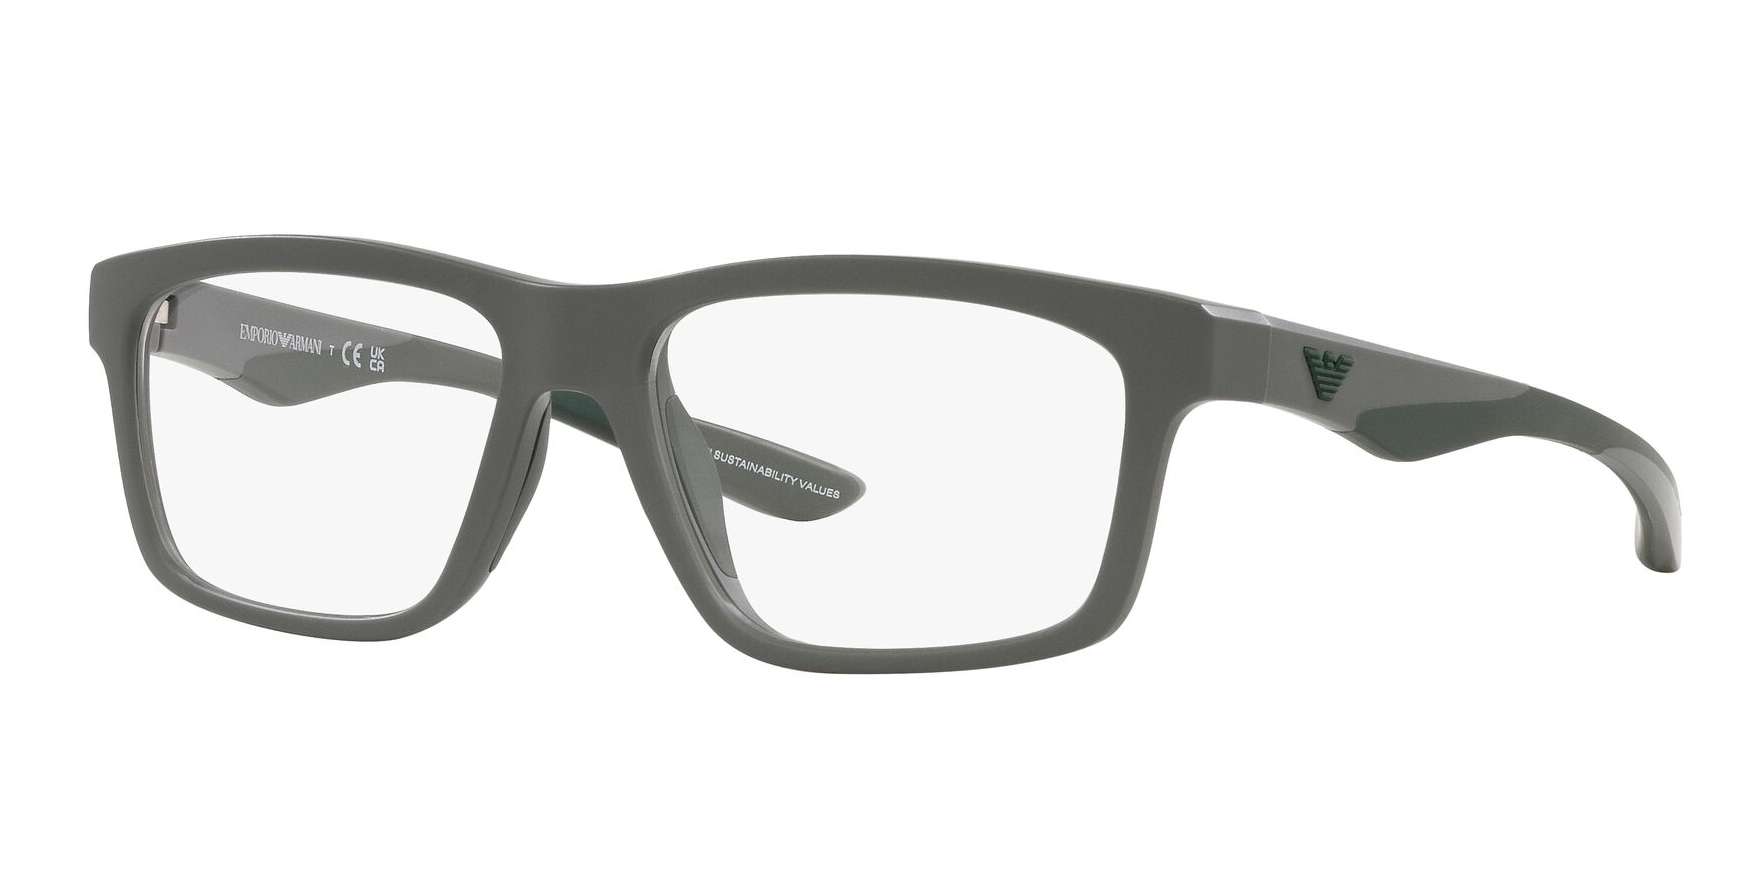 Armani briller - ea3220u fra Emporio Armani - Grå - Plast - oval - large